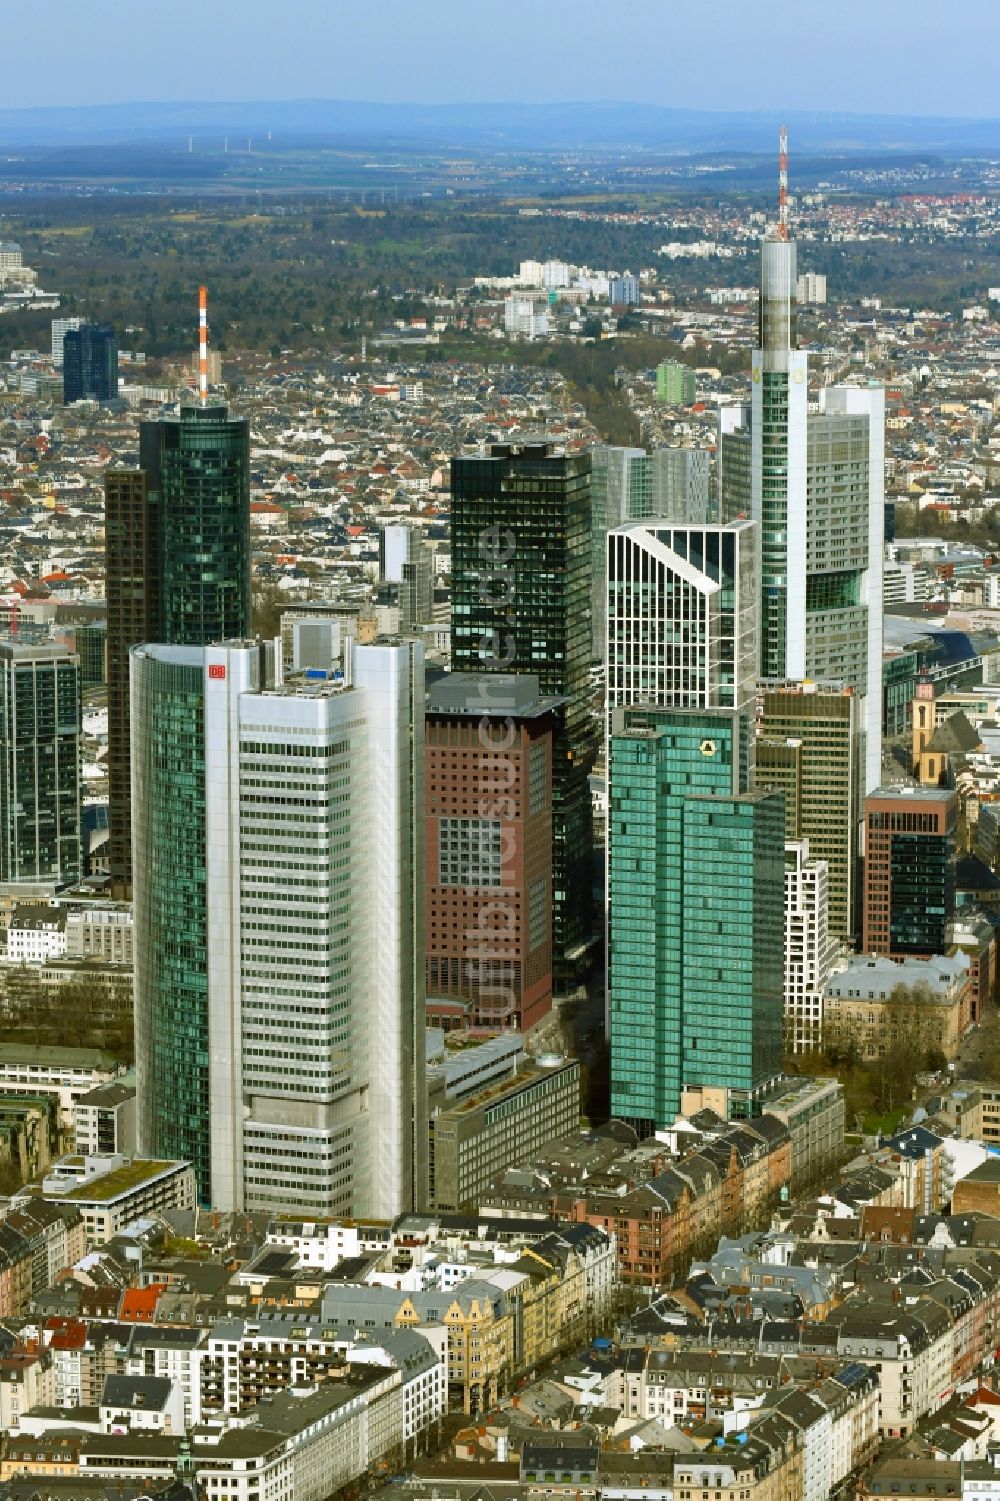 Luftaufnahme Frankfurt am Main - Stadtzentrum mit der Skyline im Innenstadtbereich in Frankfurt am Main im Bundesland Hessen, Deutschland